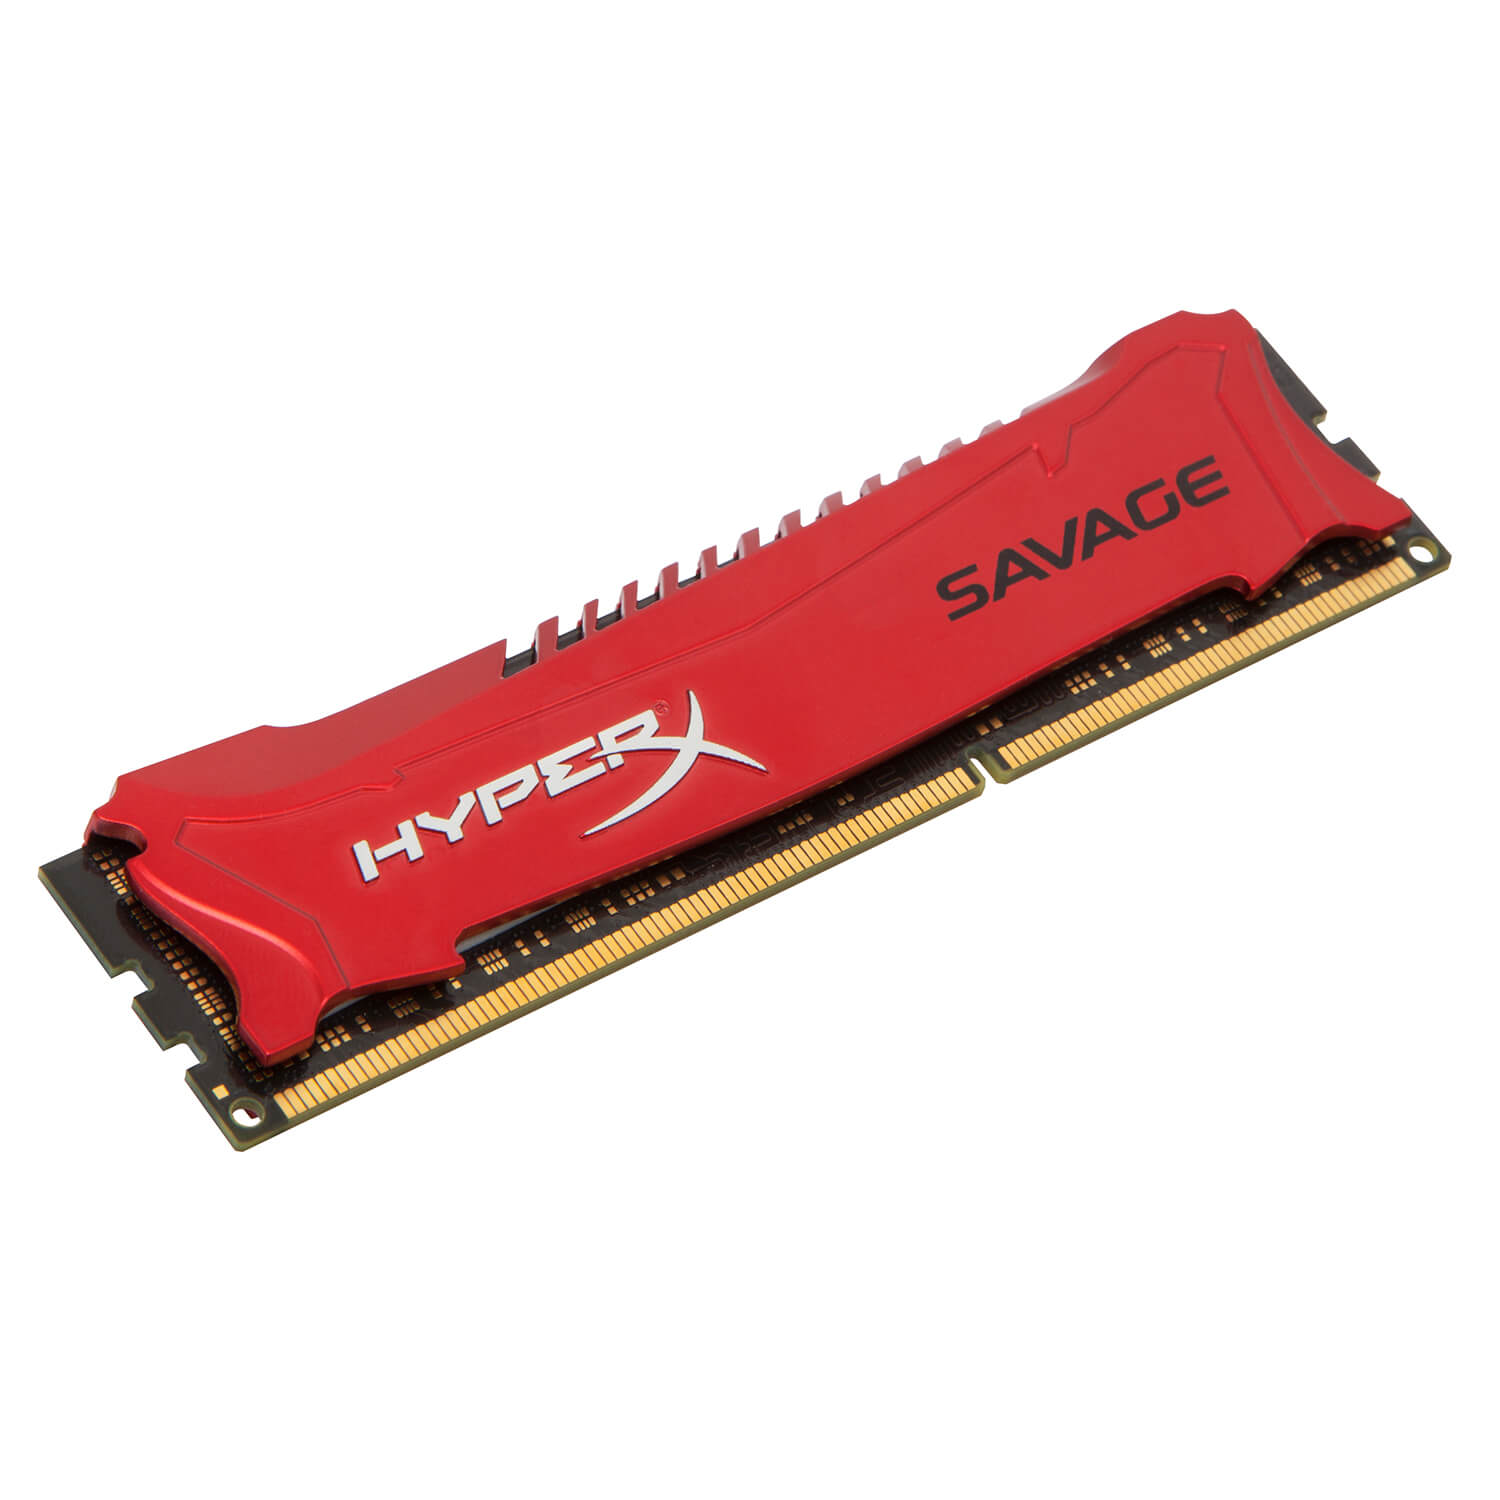  Memorie Kingston HyperX Savage HX316C9SR/8, DDR3, 1600MHz, CL9 